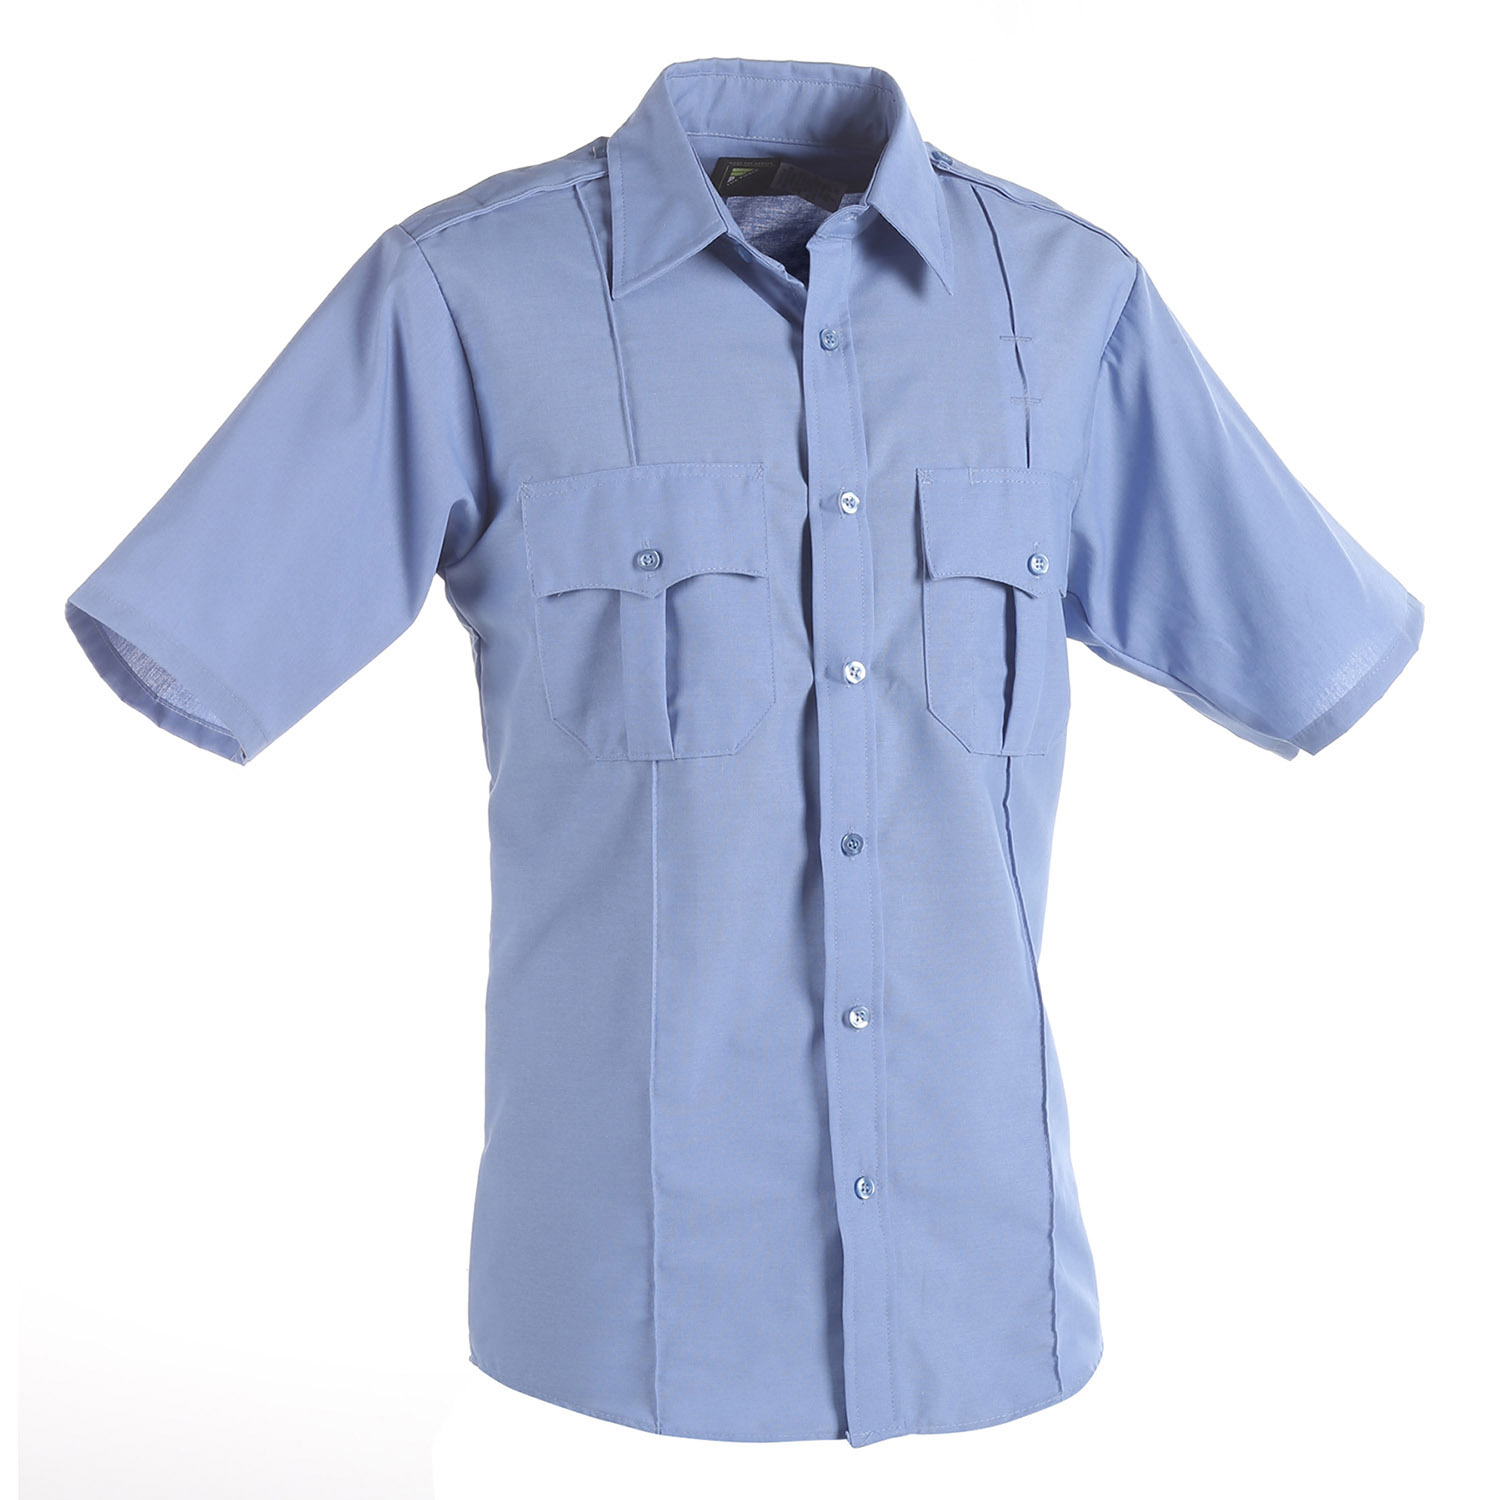 05) SP46 Light Blue Uniform Shirt